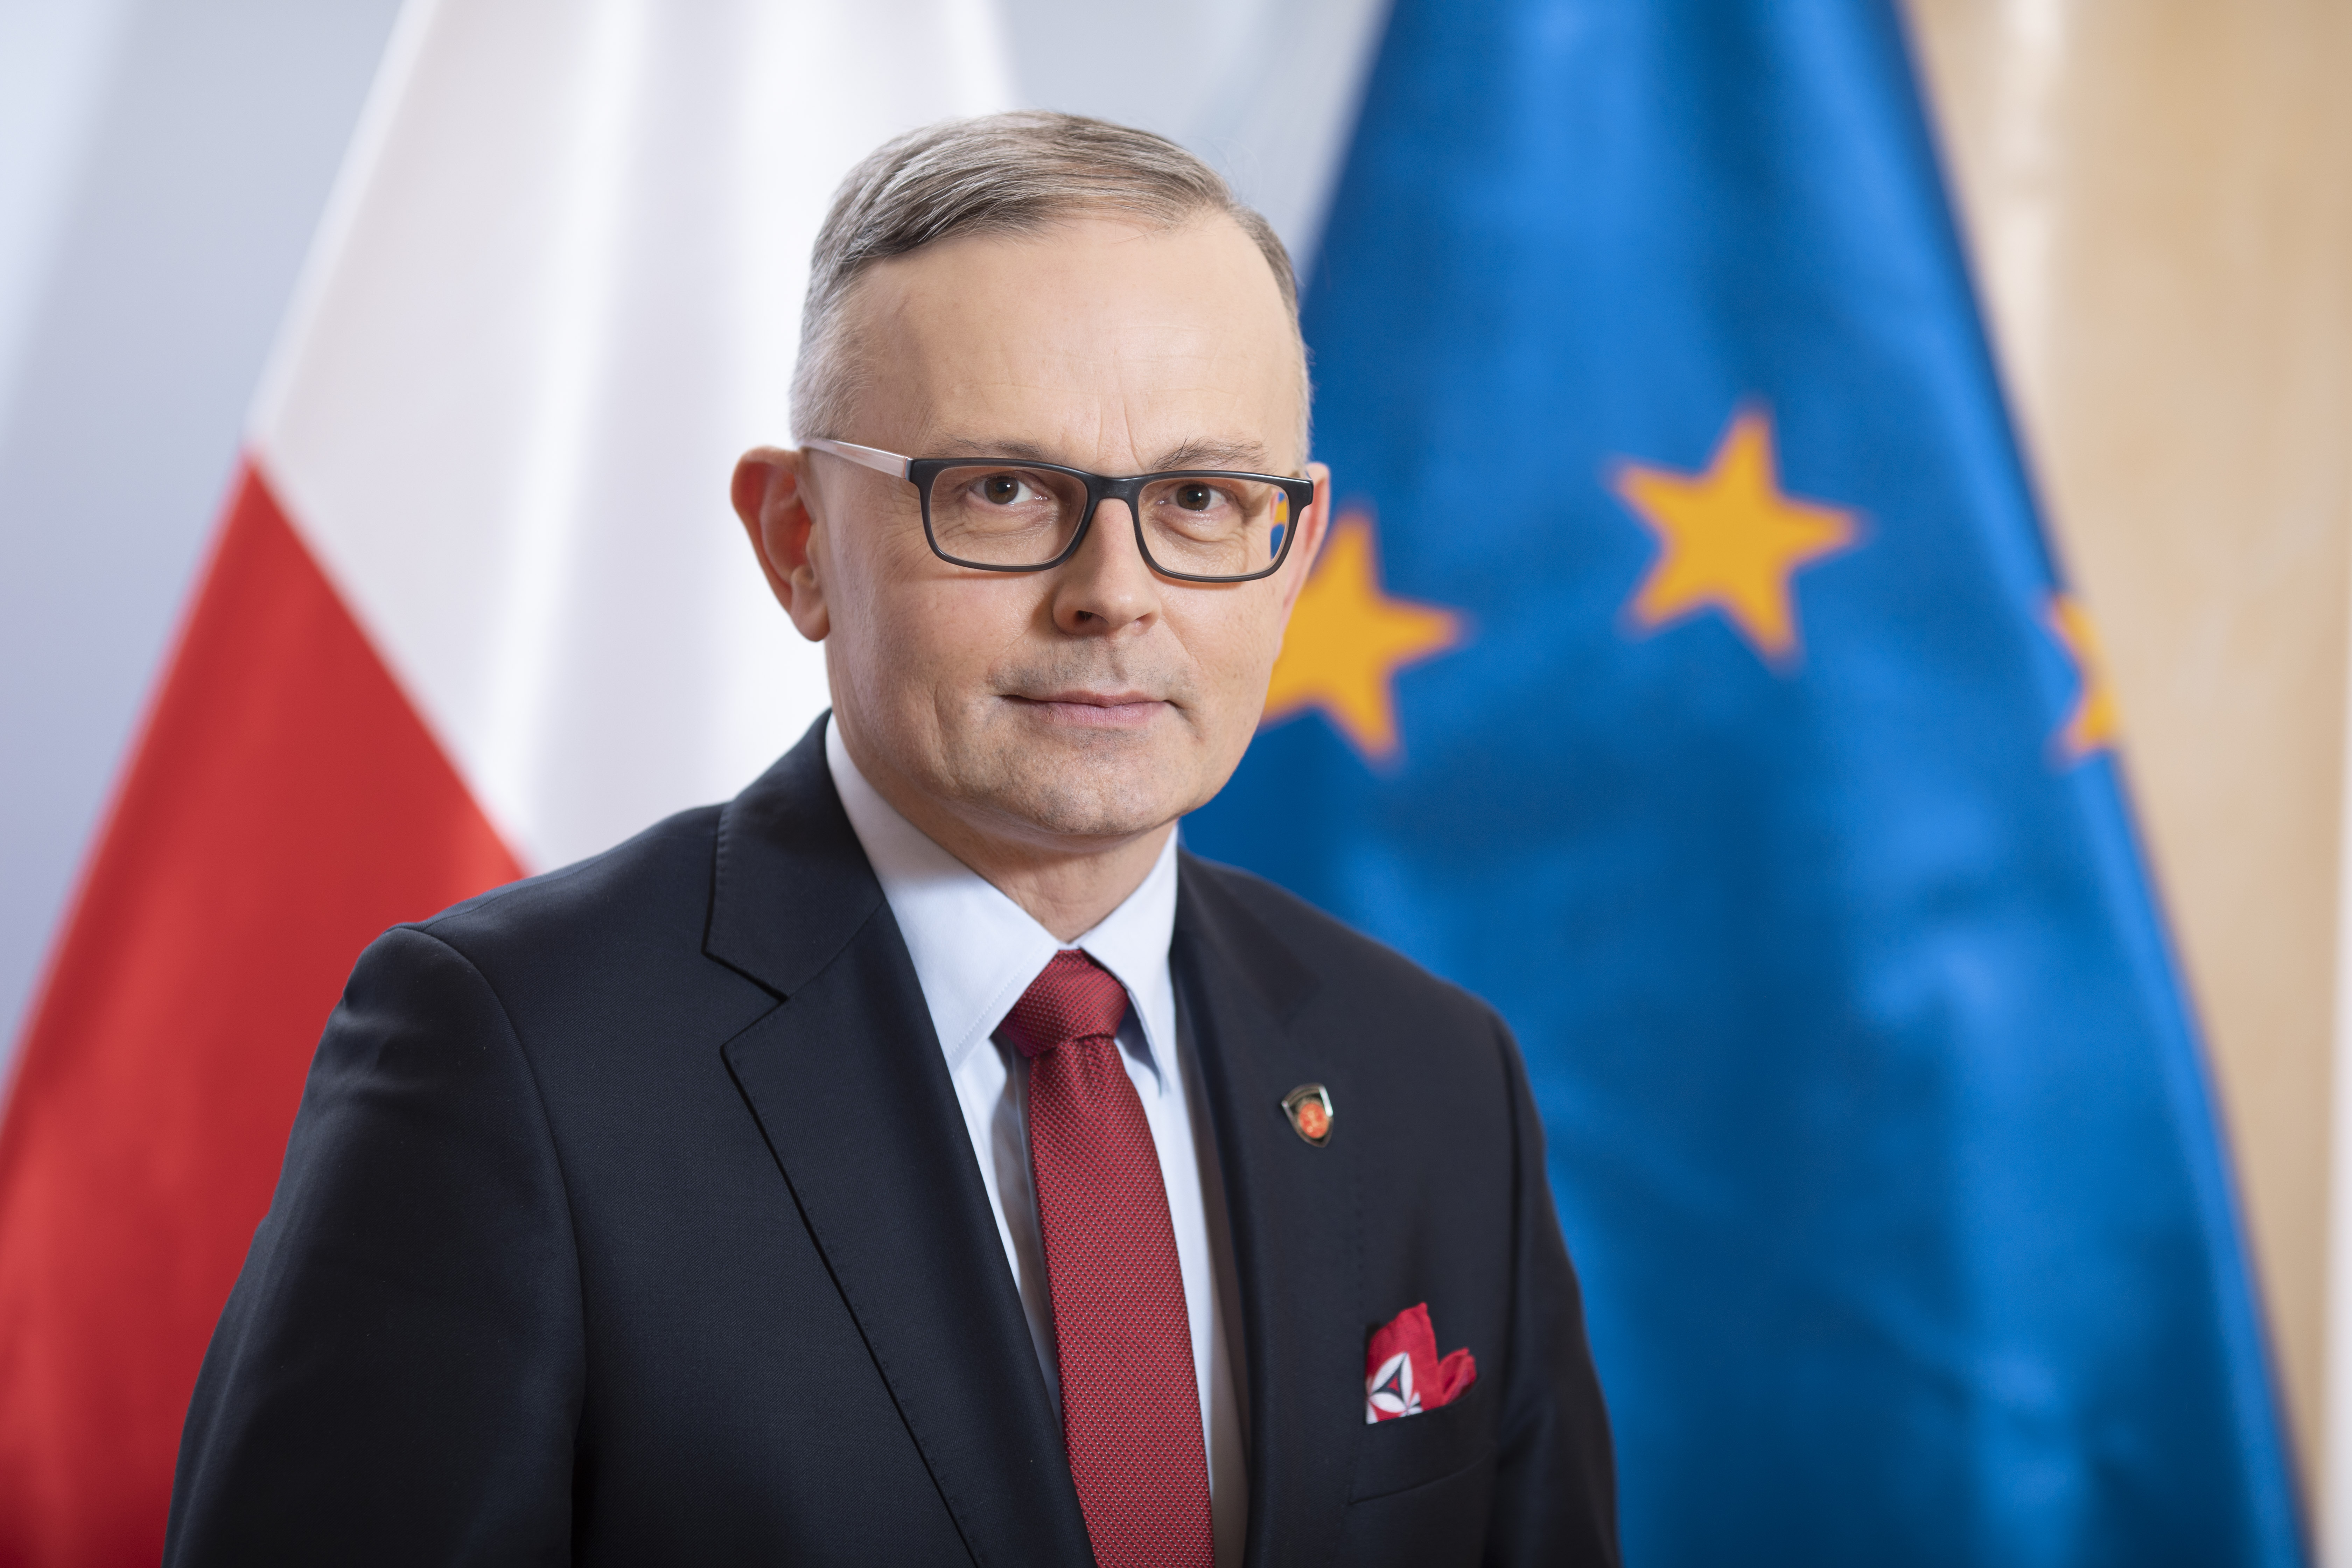 Mariusz Gojny - Podsekretarz Stanu, Zastępca Szefa Krajowej Administracji Skarbowej 